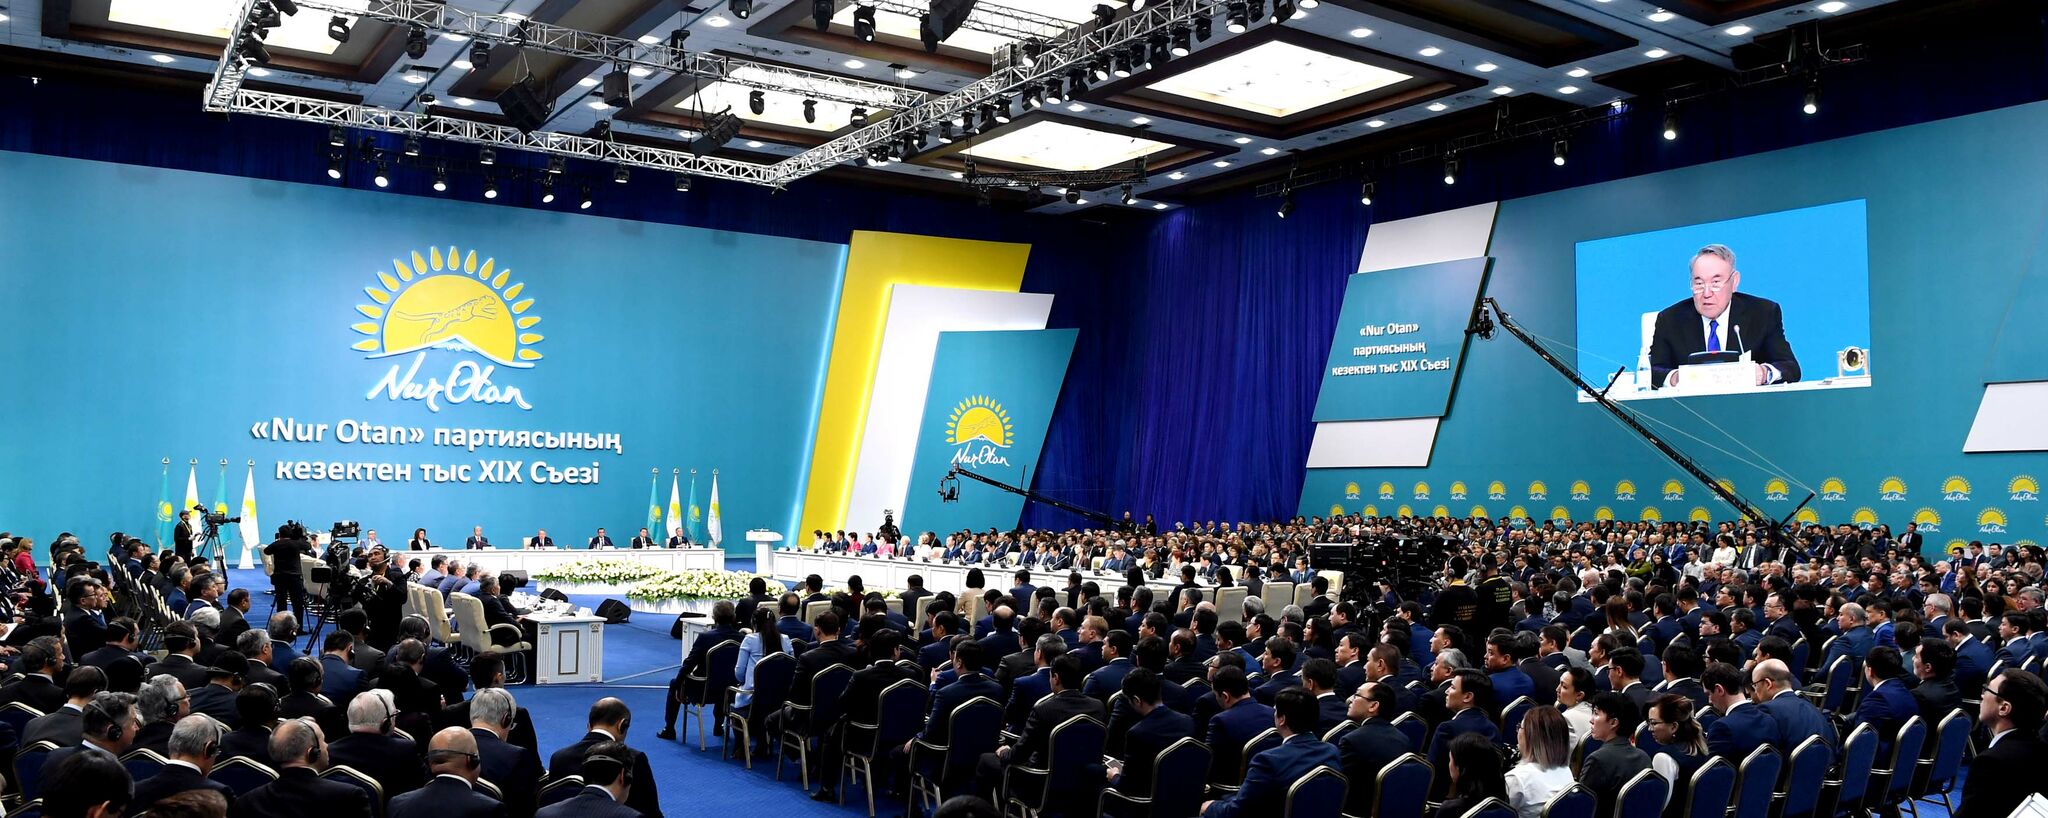 Елбасы Нурсултан Назарбаев: Нам нужны стабильность и единство!